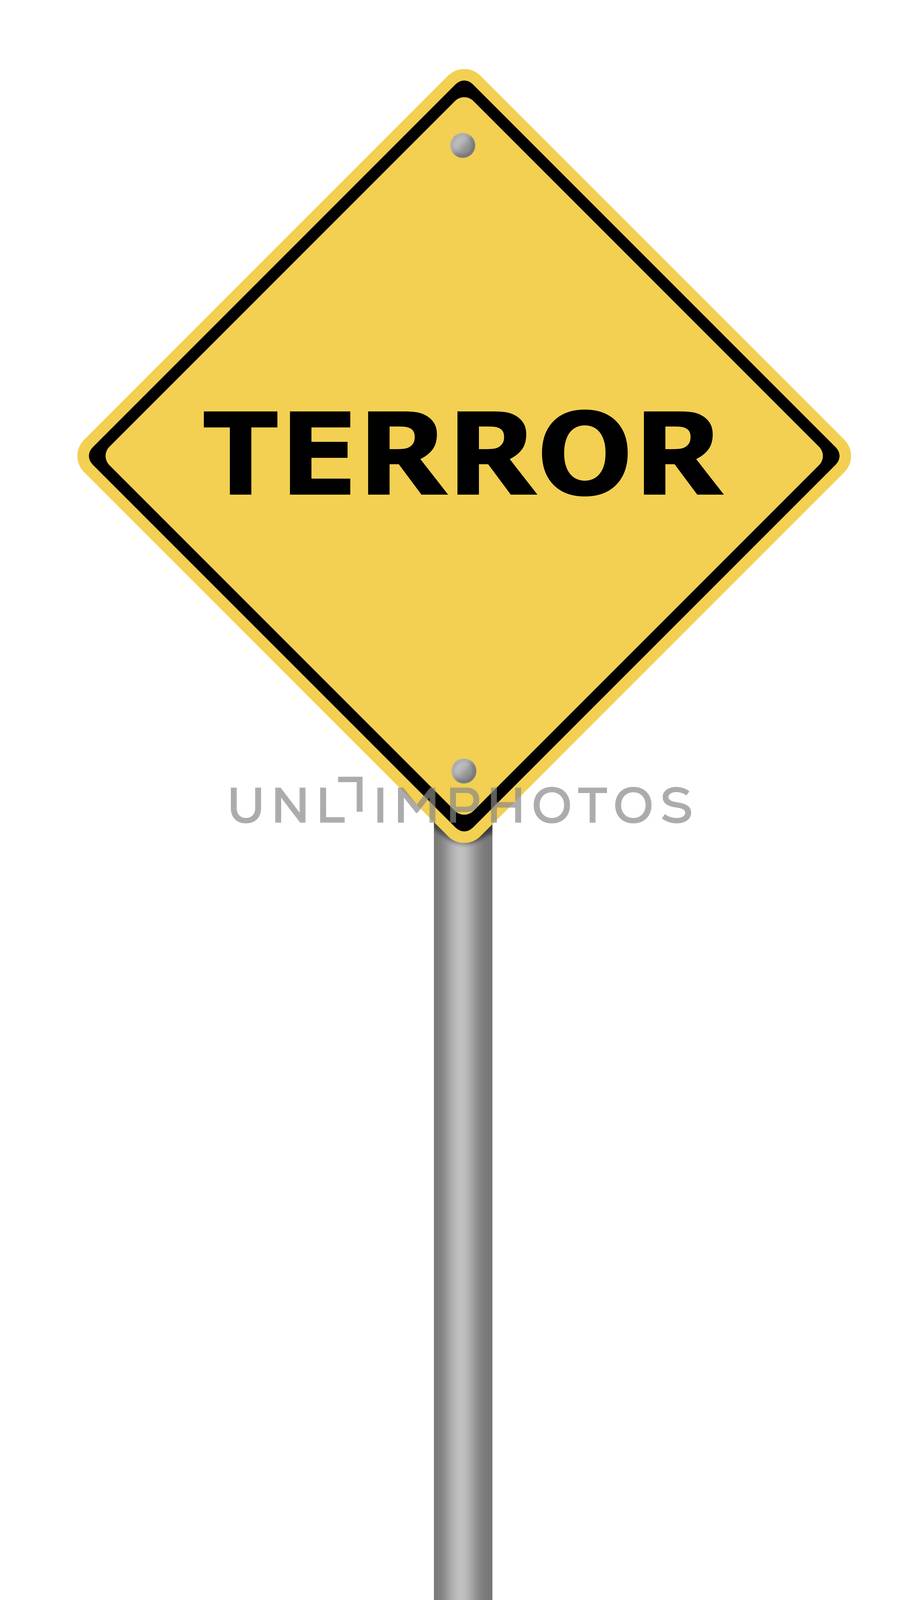 Terror Warning Sign by hlehnerer